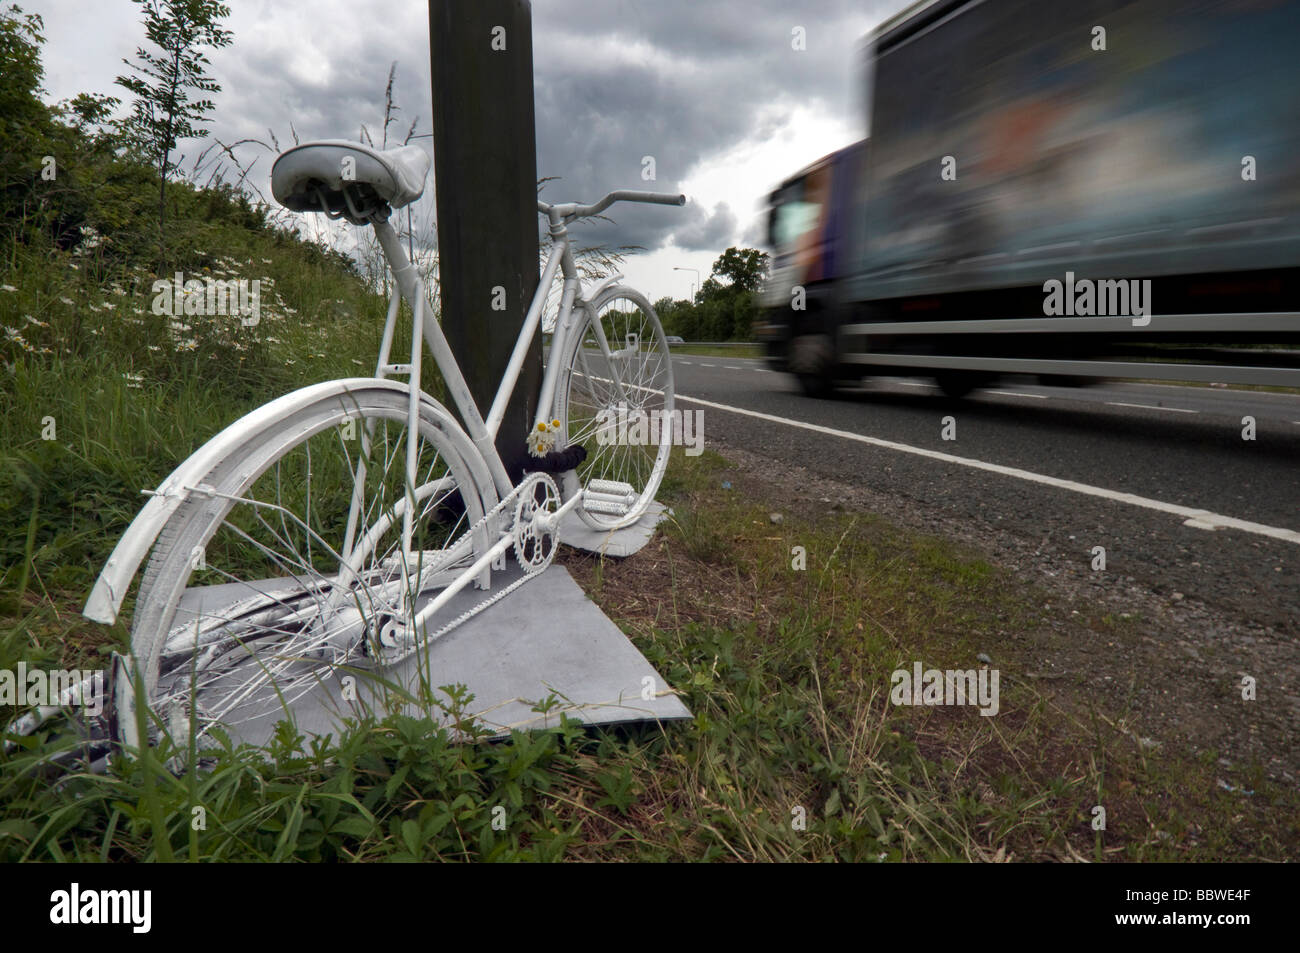 Un fantasma de bicicletas - un ciclo pintadas de blanco encadenado a el lugar donde un ciclista resultó muerto en un accidente de carretera en la A23. Foto de stock